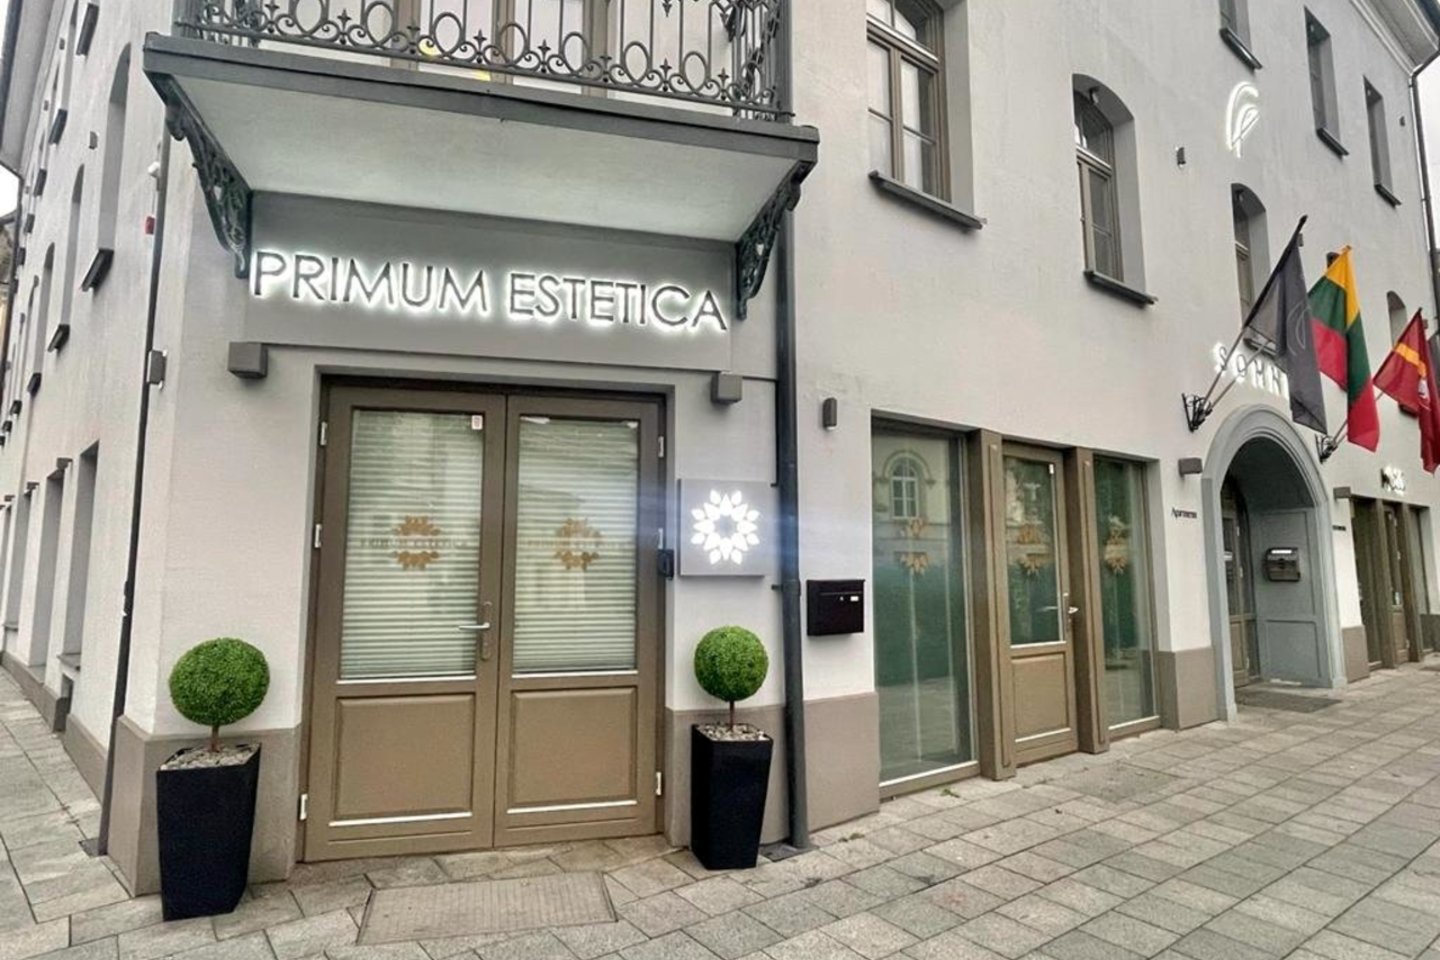 Vilniuje įsikūrusios klinikos „Primum Estetica“ komanda turi sprendimą skubantiems, abejojantiems ar nedrįstantiems imtis pokyčių.<br>Bendrovės nuotr.